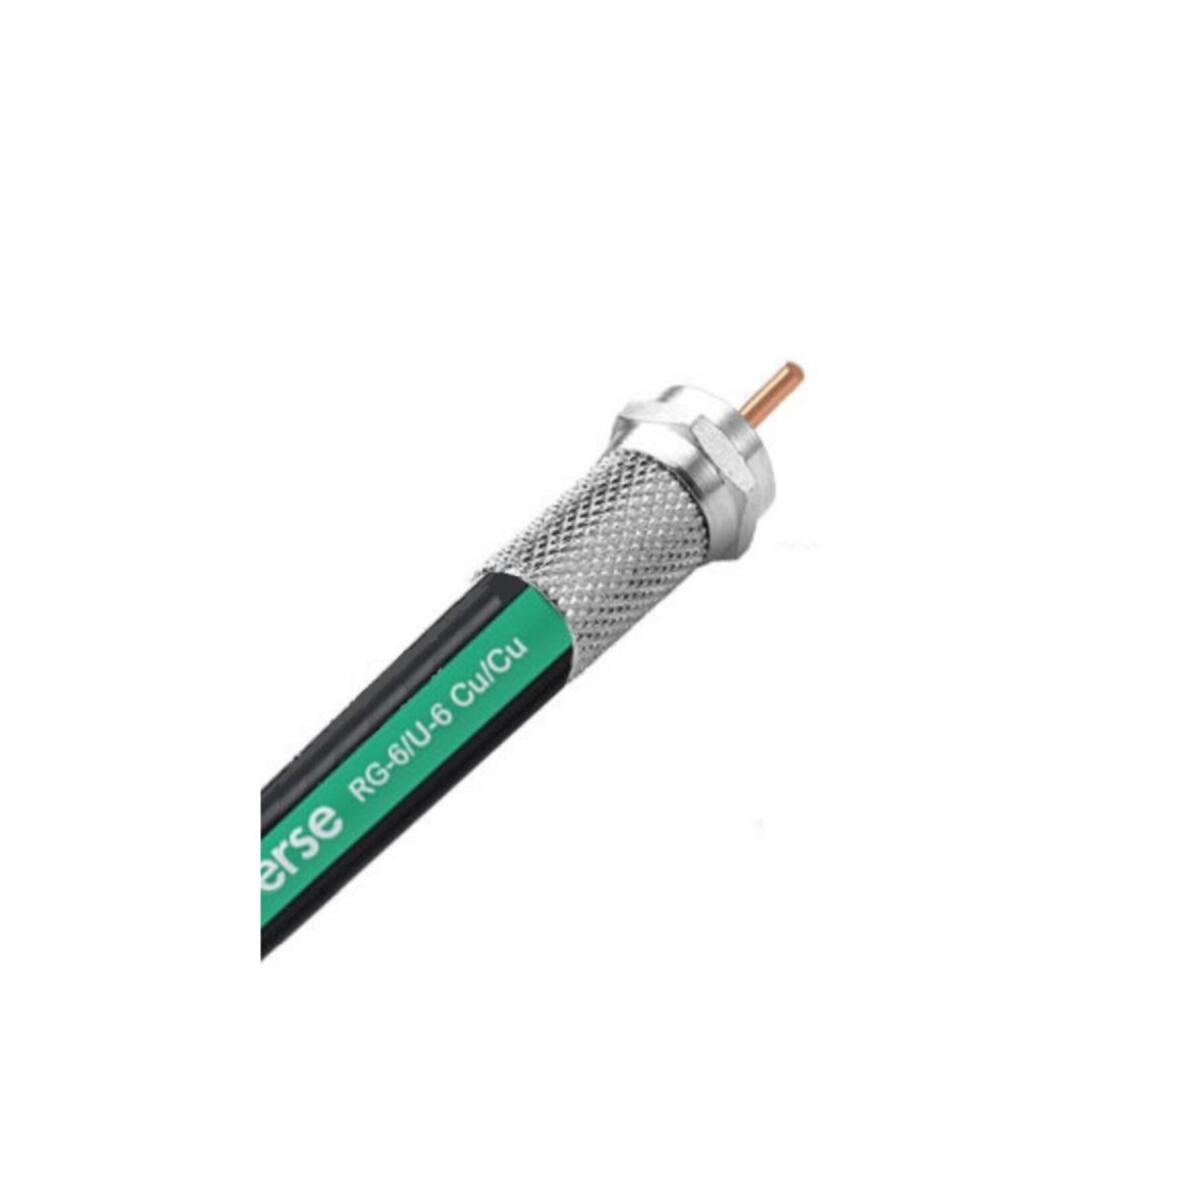 Rg6/U6 Anten Kablosu %100 Bakır (F Konnektör Takılı) 2 Metre